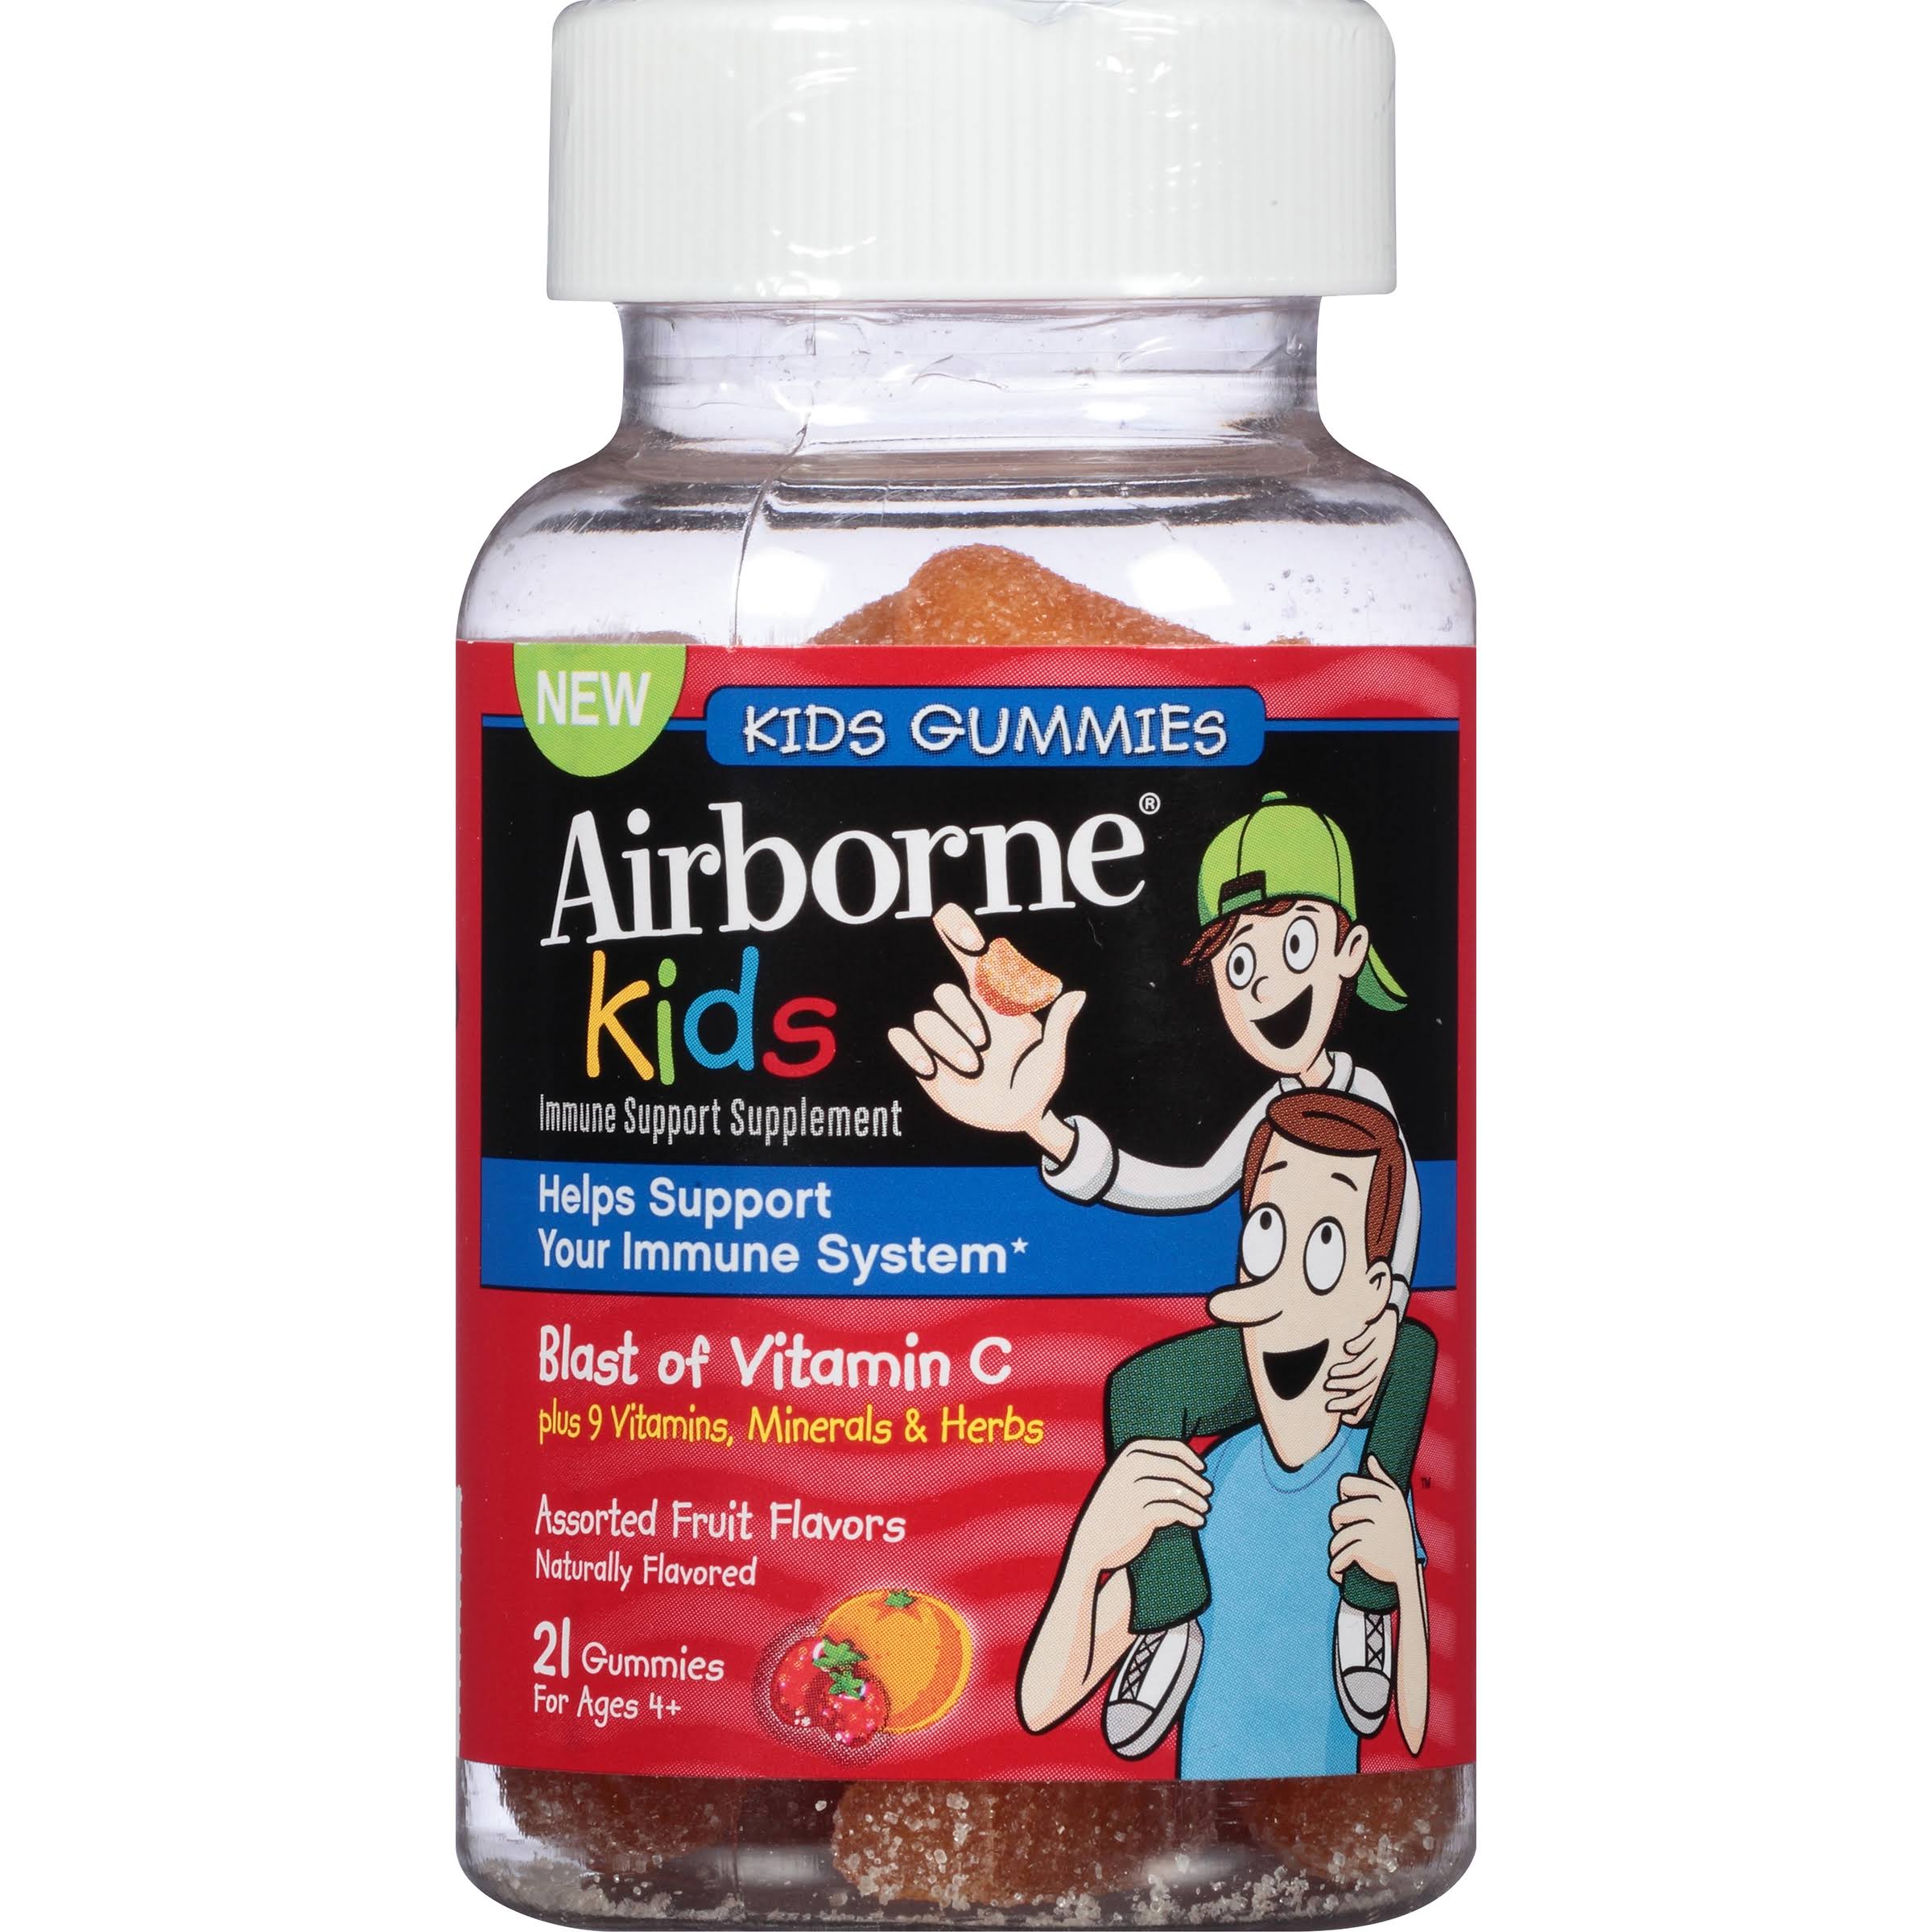 Airborne Kids Gummies Vitamin Immune Support Supplement - 667mg, 21 Gummies